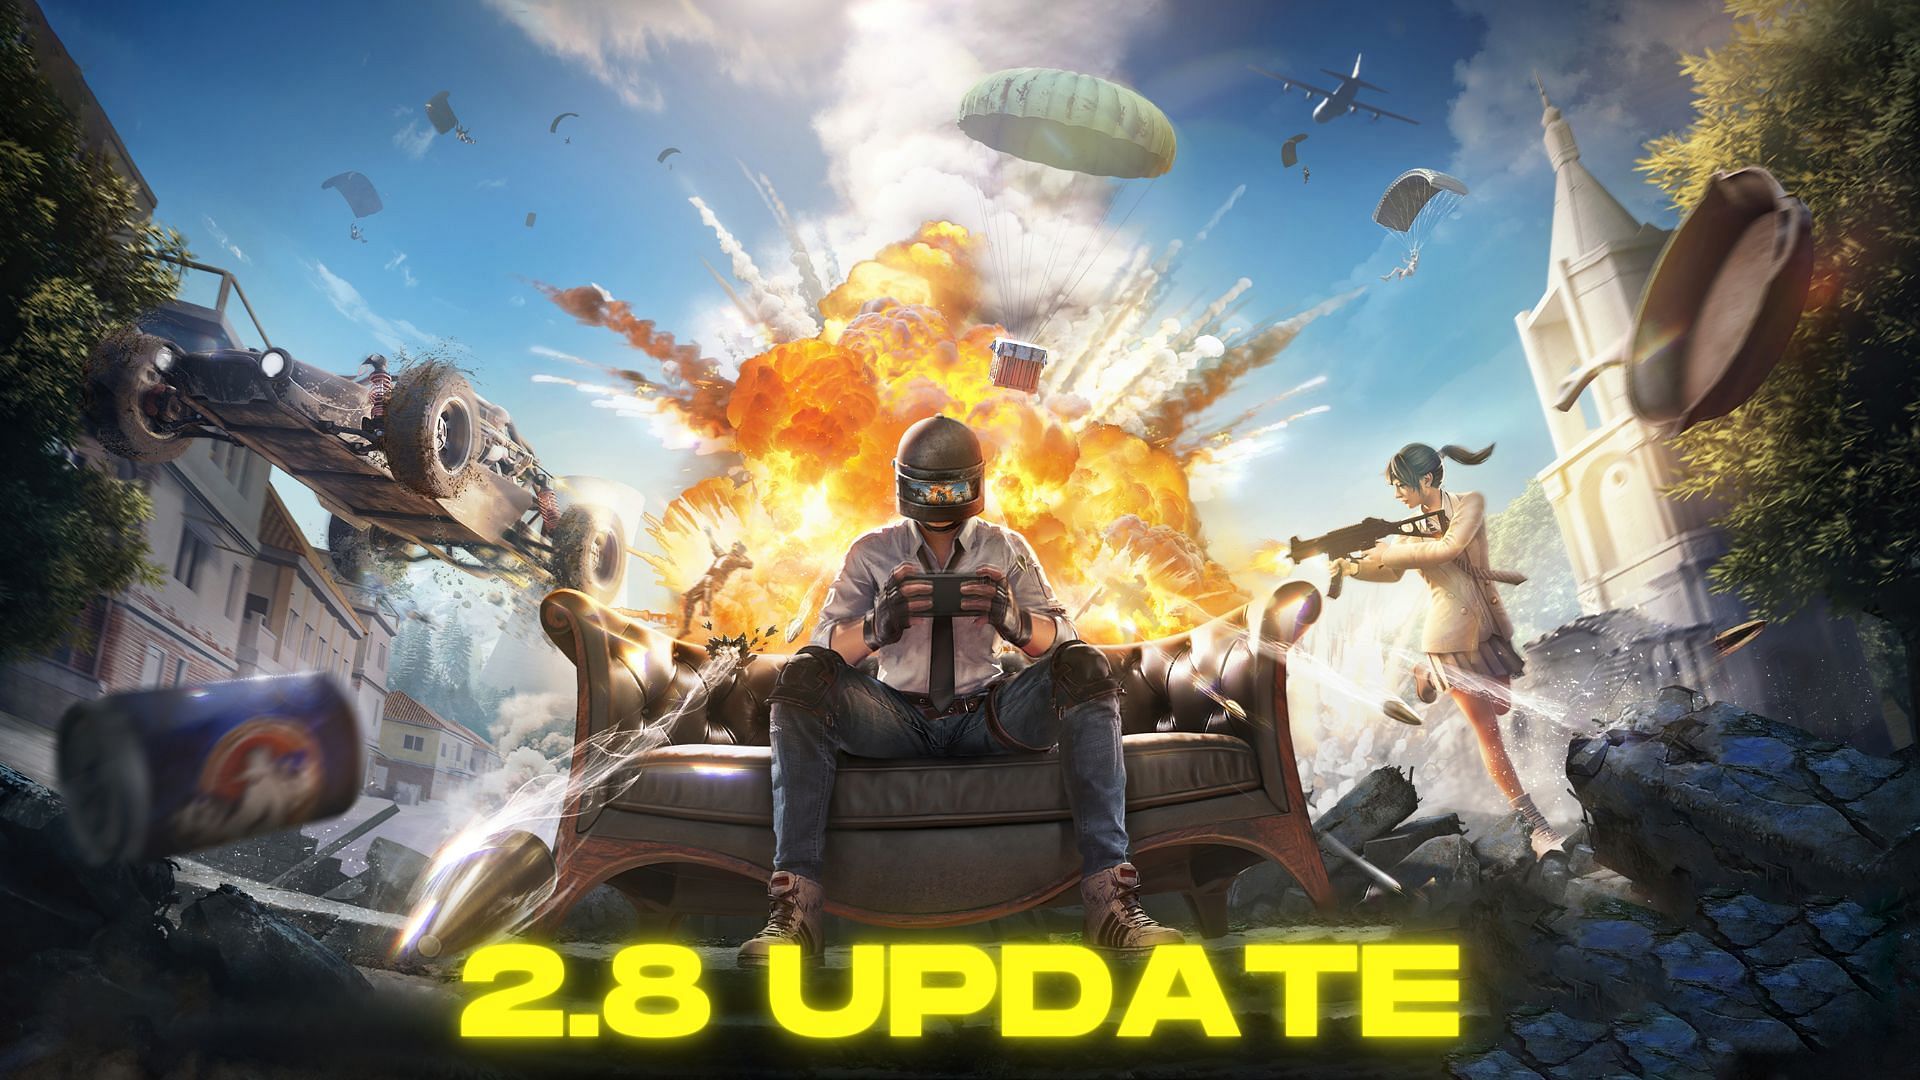 BGMI 2.8 update is expected to release in October (Image via Sportskeeda)